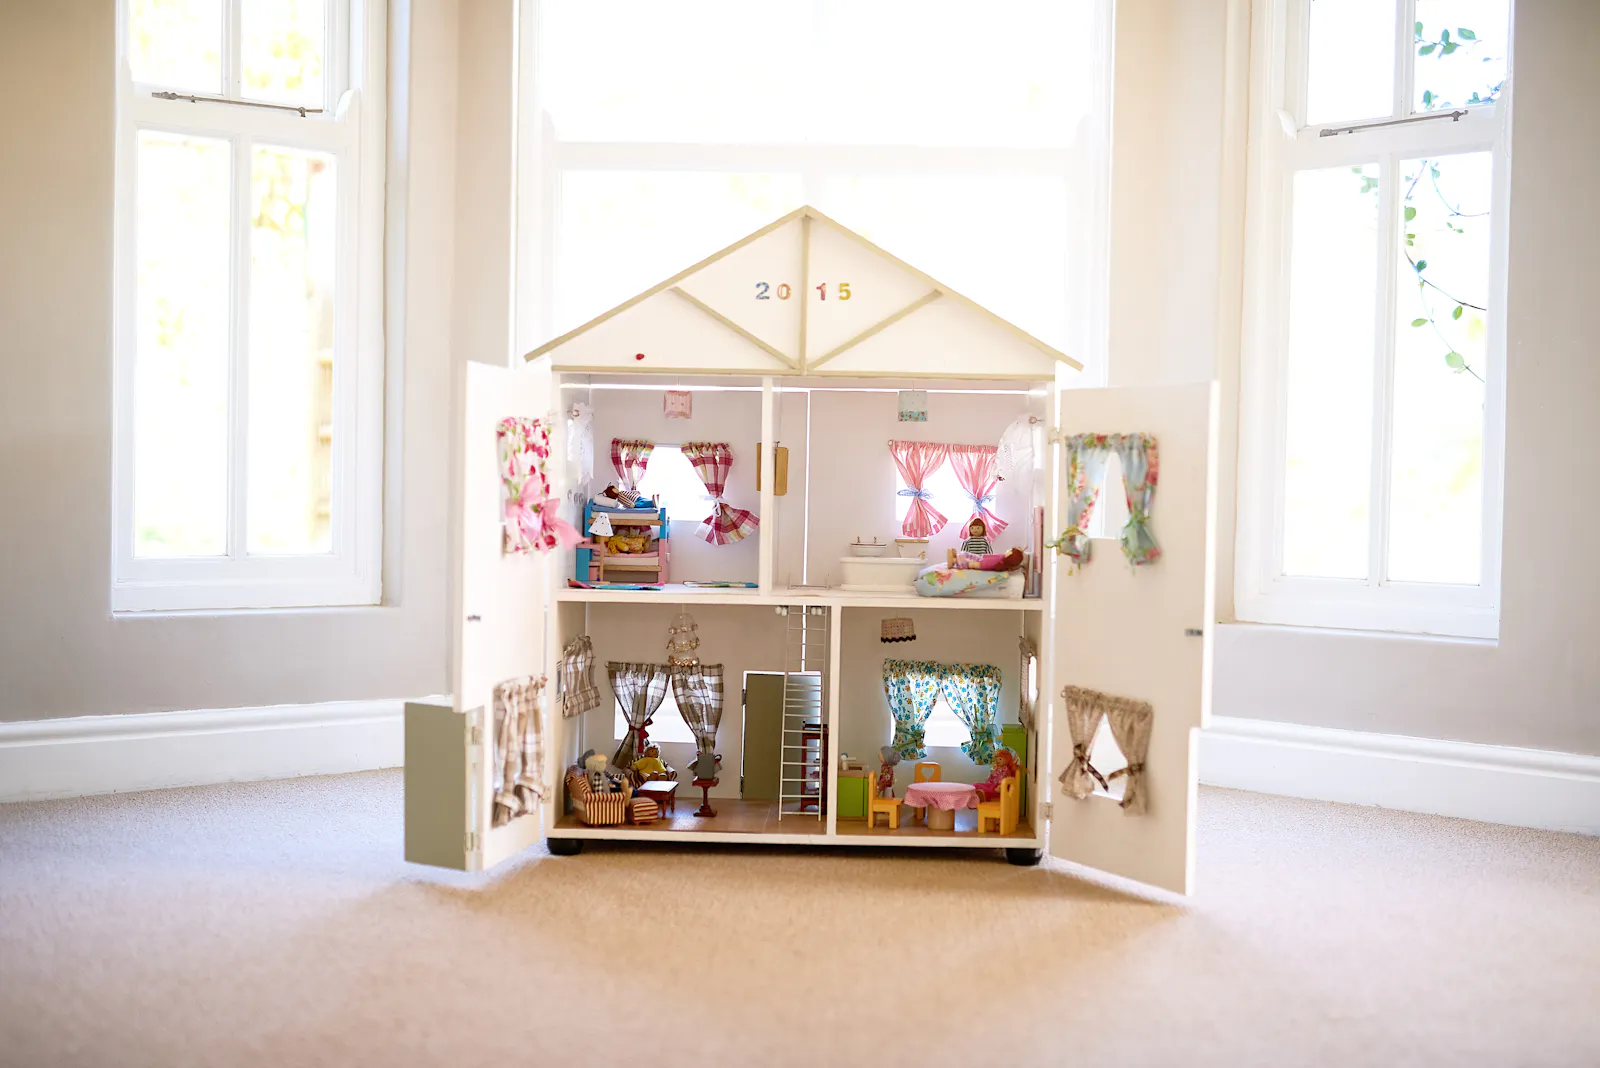 Ein aufwendig eingerichtetes Puppenhaus in einem Raum.